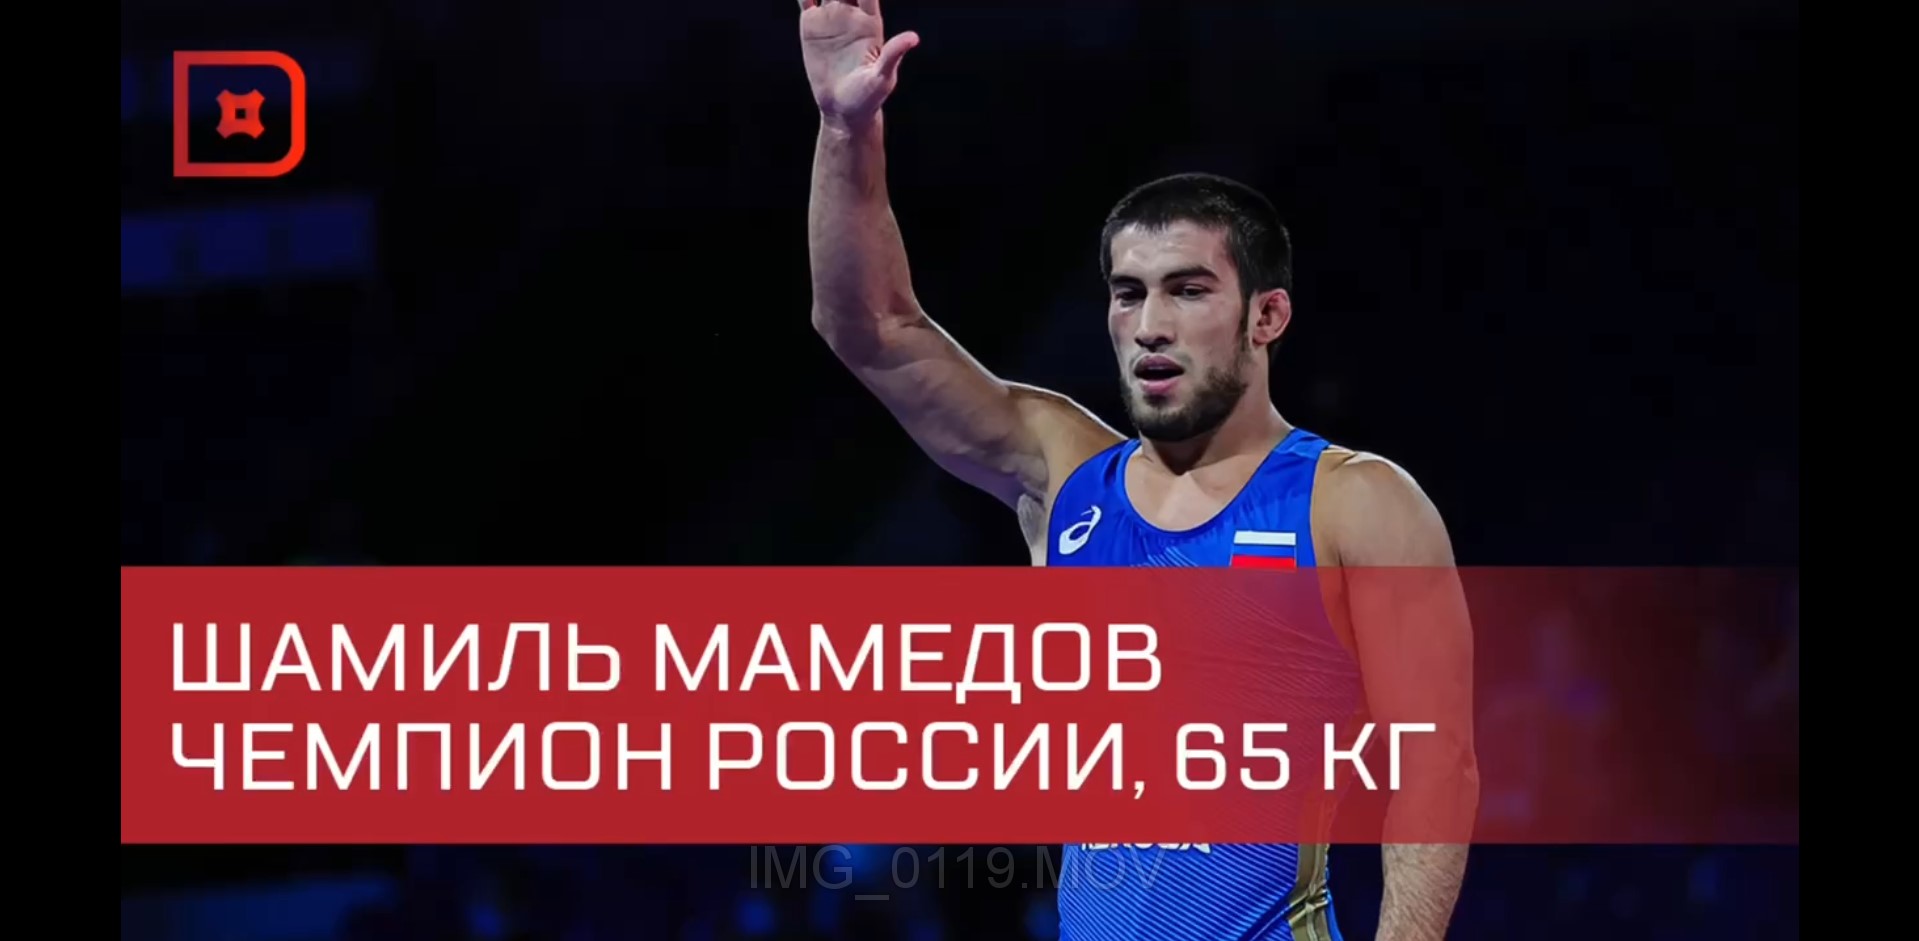 Шамиль Мамедов завоевал золотую медаль ЧР по вольной борьбе